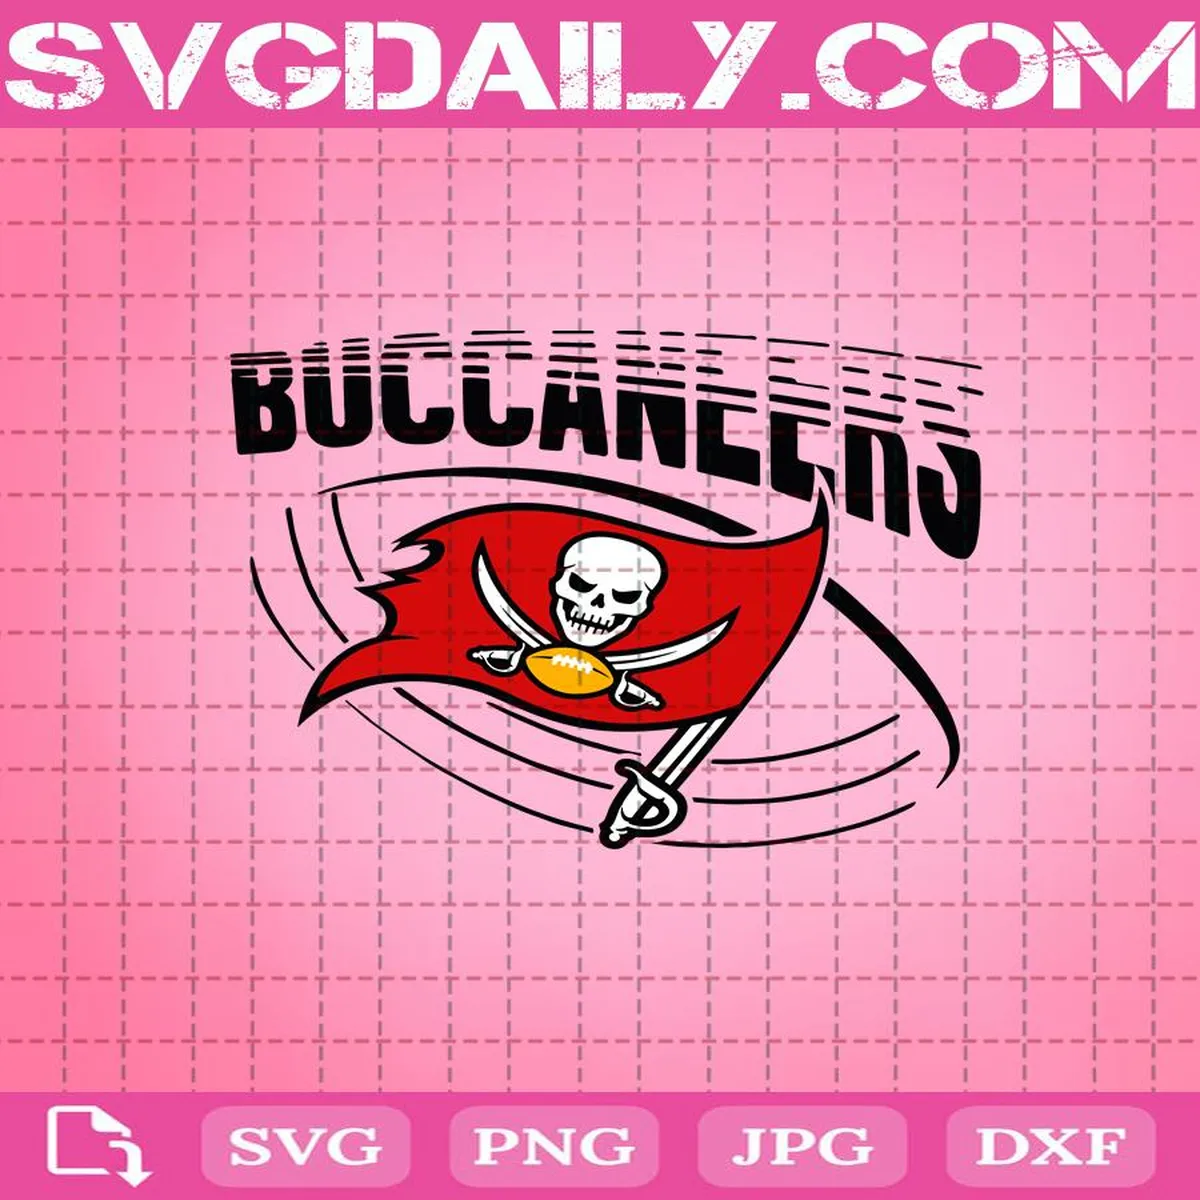 Buccaneers Svg, Sport Svg, Tampa Bay Buccaneers Svg, Tampa Bay Logo Svg, Football Svg, Football Lover Svg